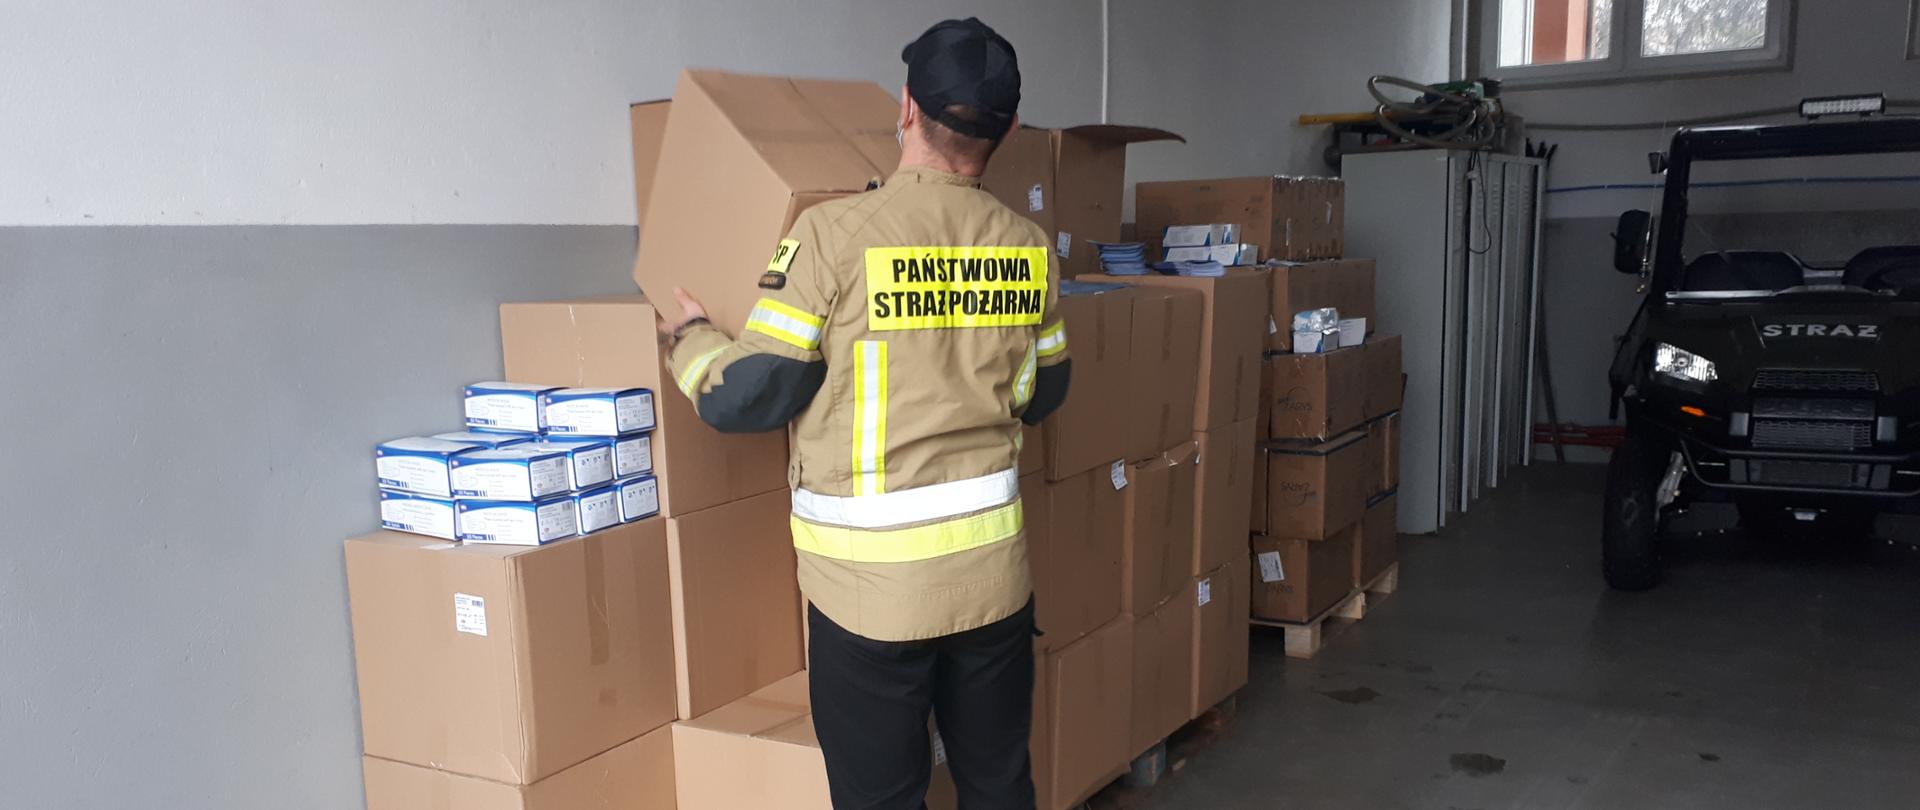 Zdjęcie przedstawia strażaka noszącego kartony z maseczkami ochronnymi